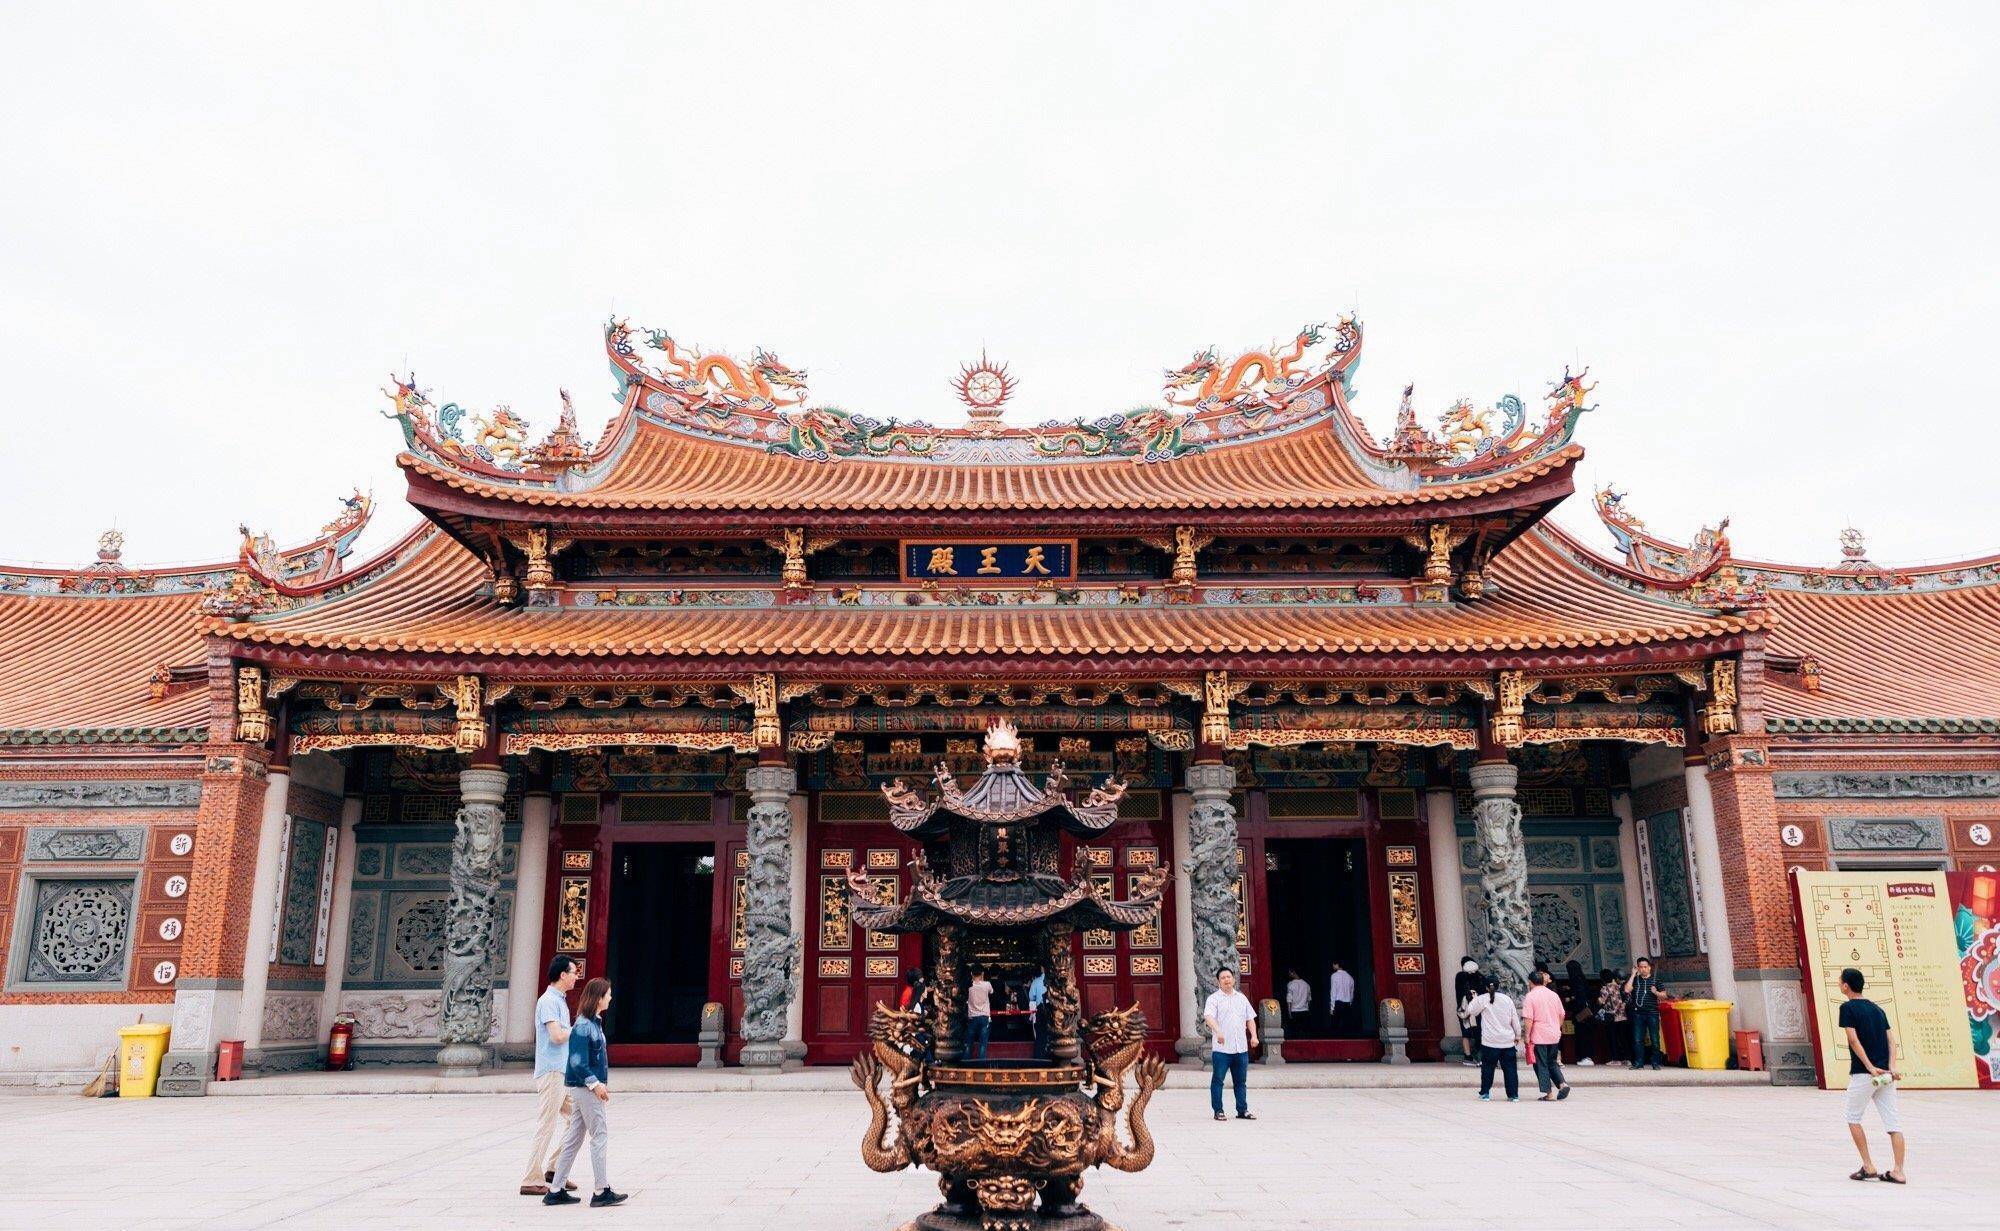 并融入了台湾省龙山寺,天后宫妈祖庙的建筑之美及苏州古典园林的典雅